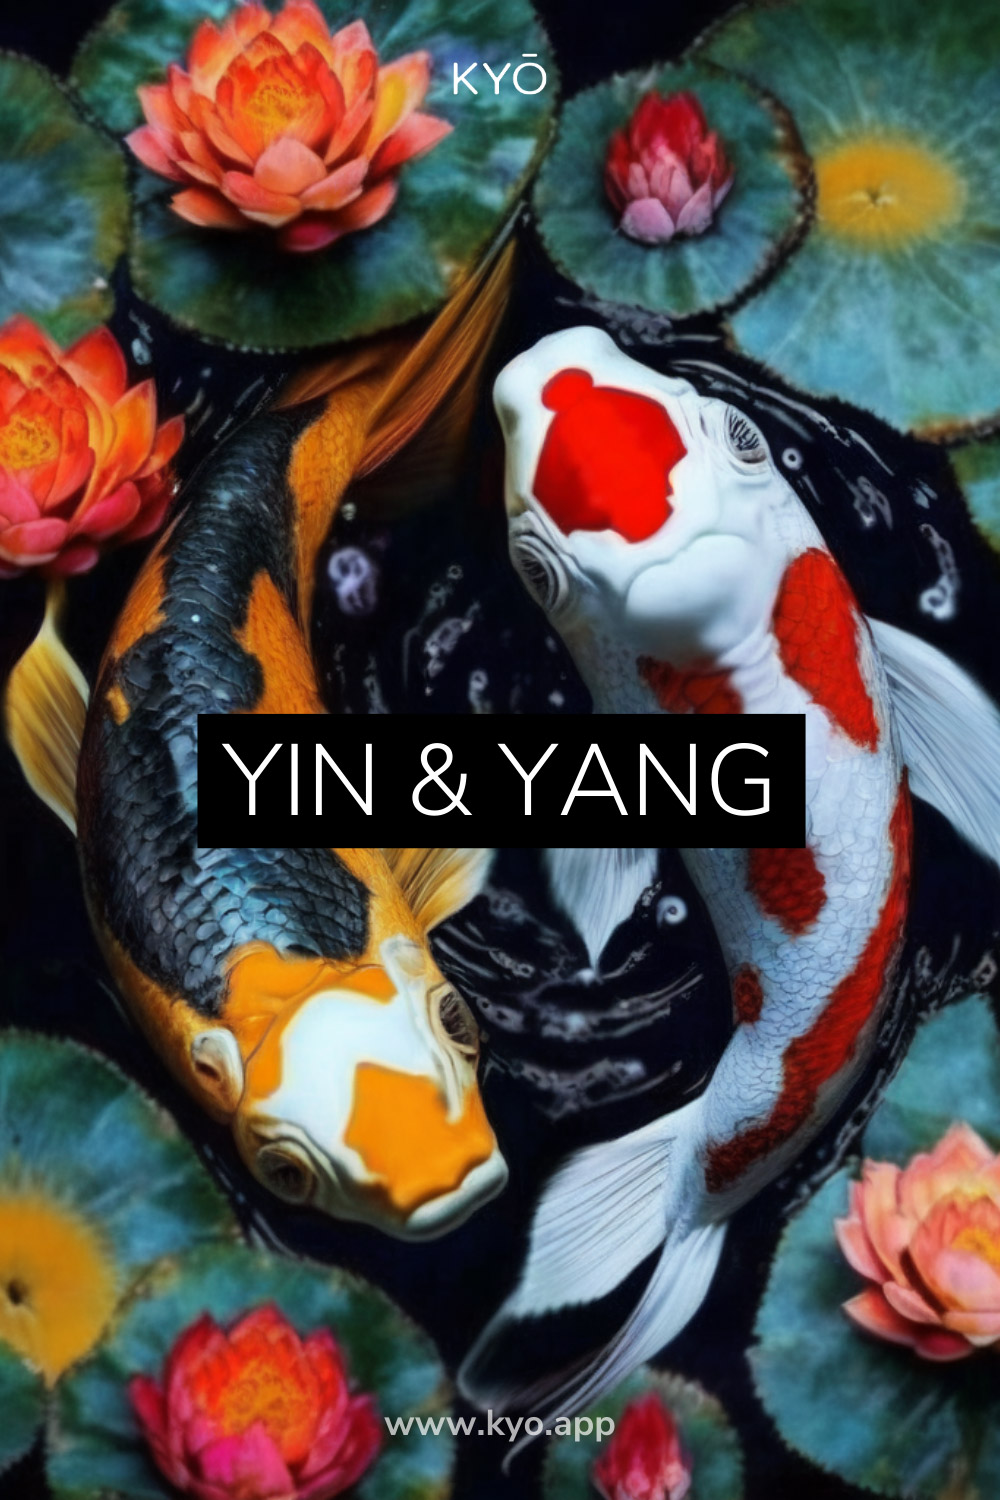 Das Prinzip von Yin und Yang wird in den hermetischen Gesetzen beschrieben